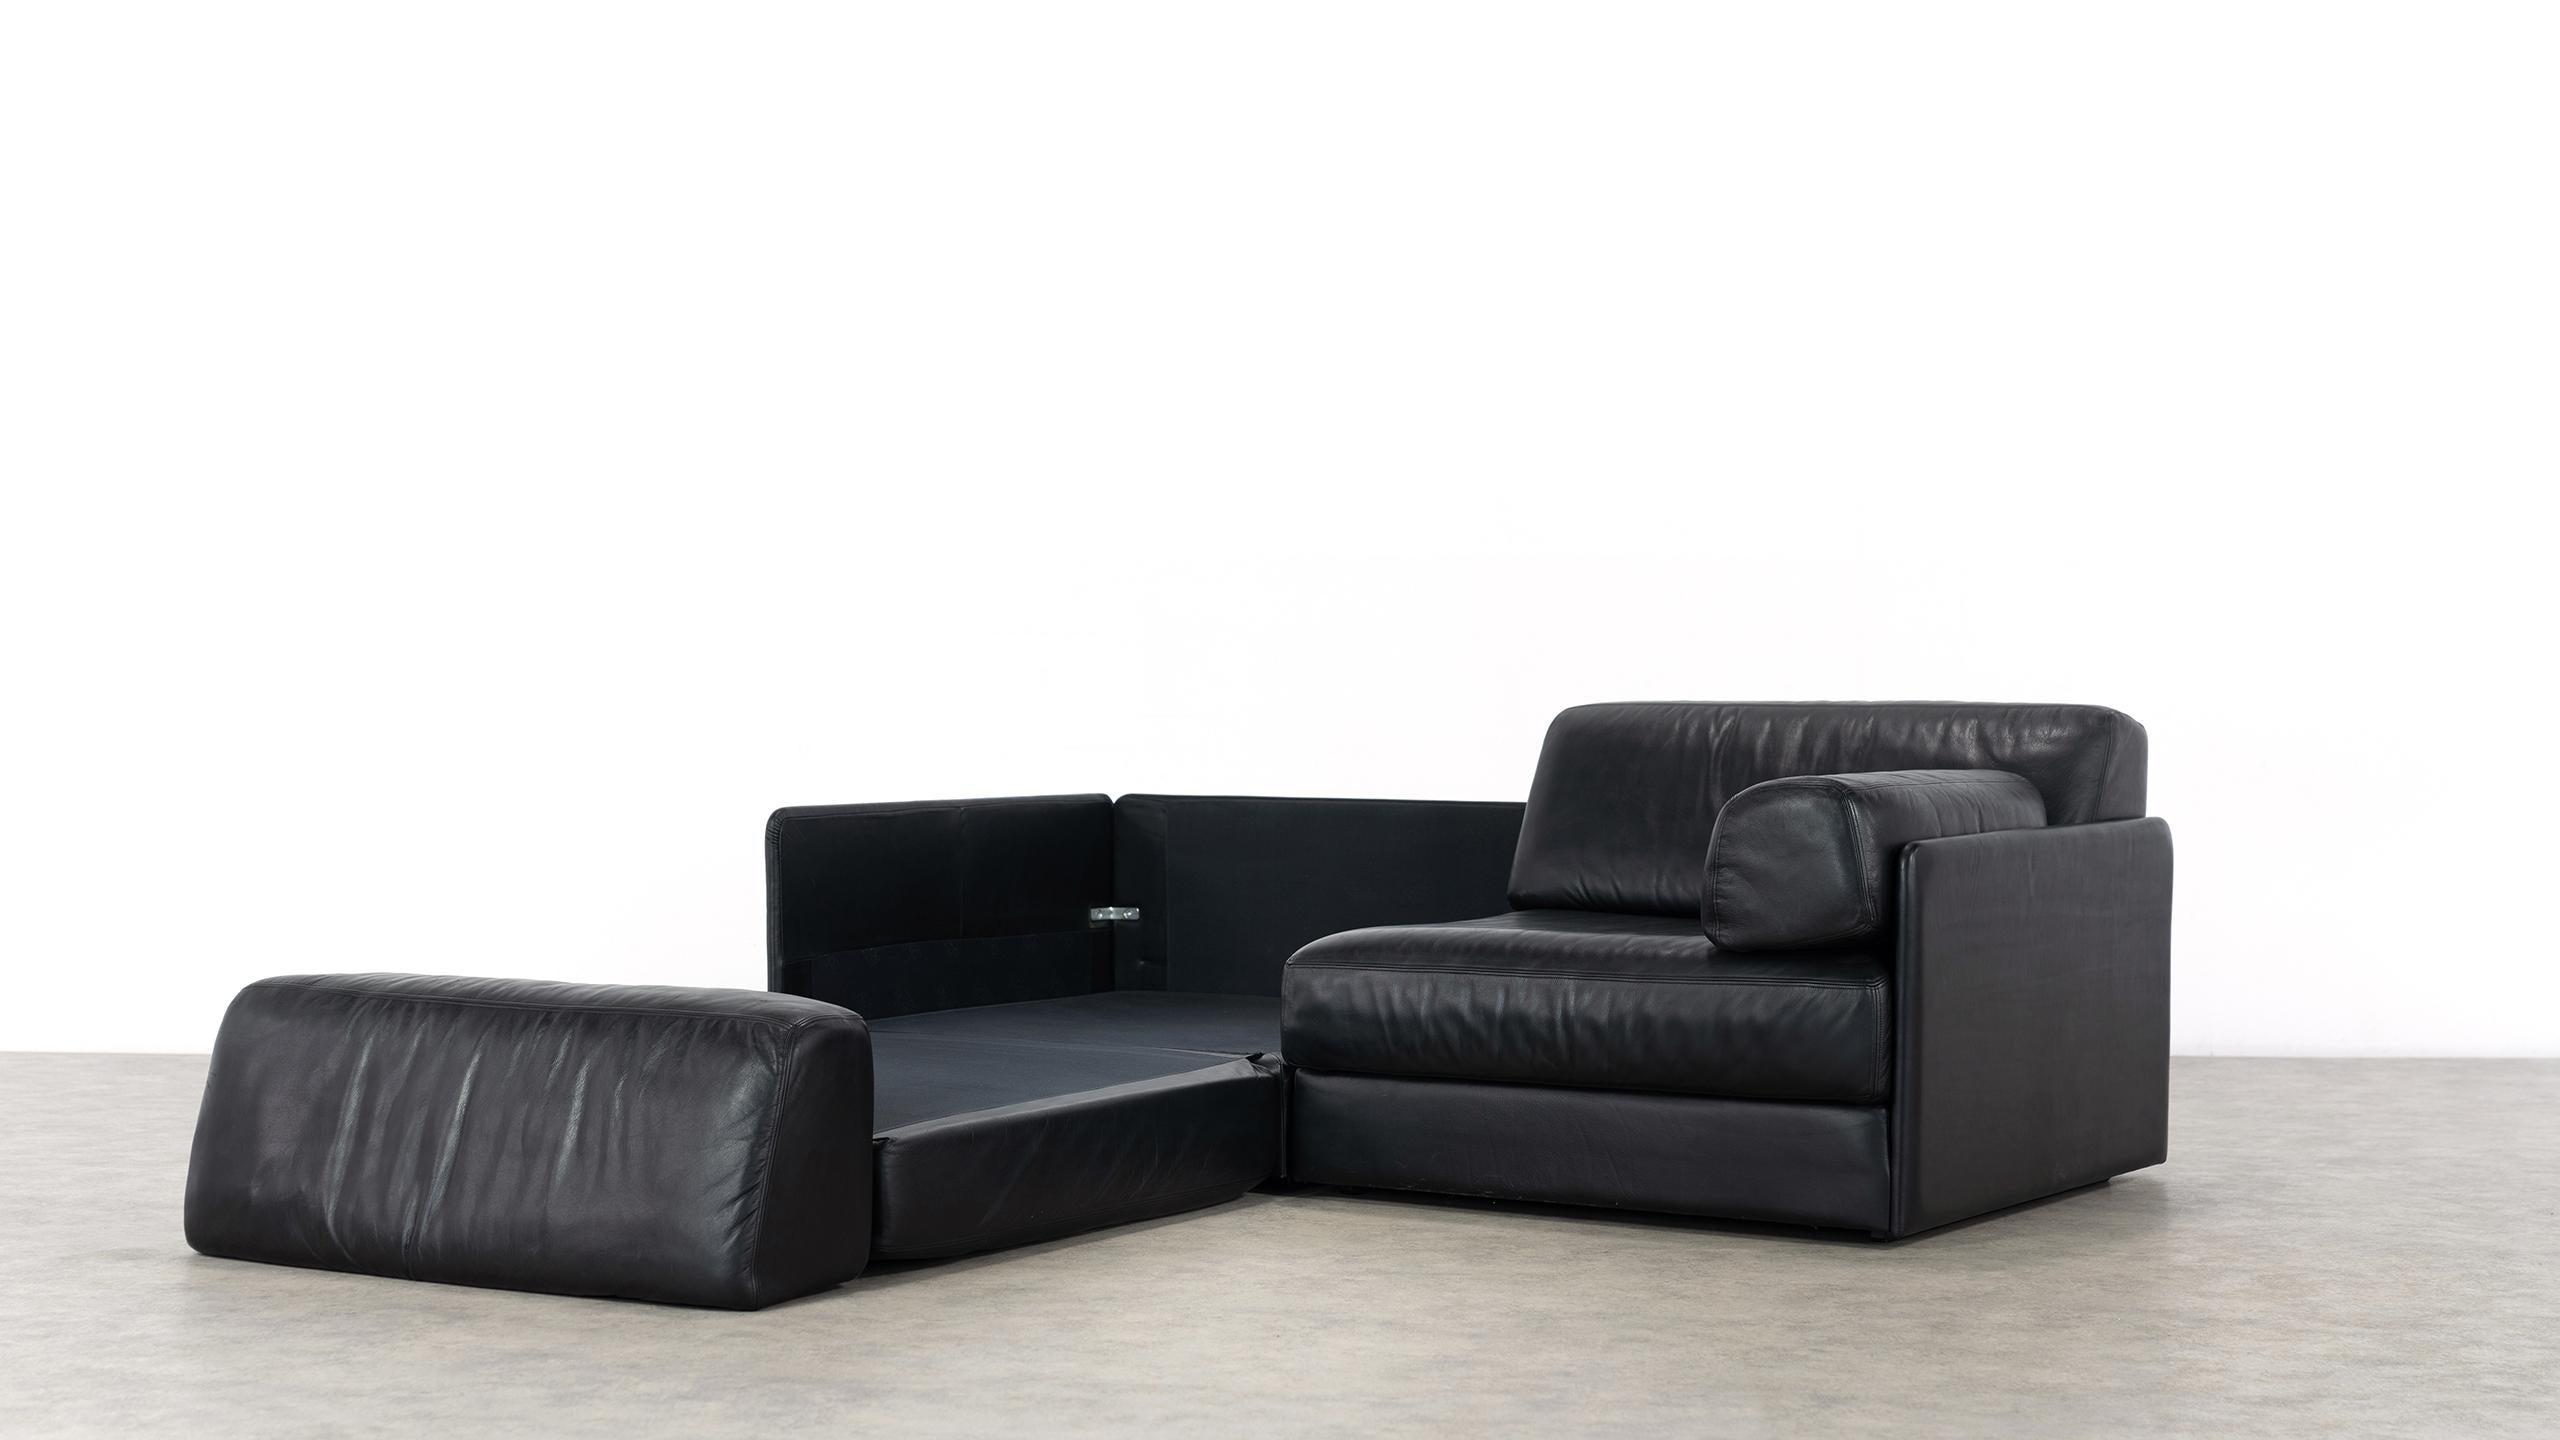 De Sede Ds76, Sofa & Daybed in Black Leather, 1972 by De Sede Design Team 8